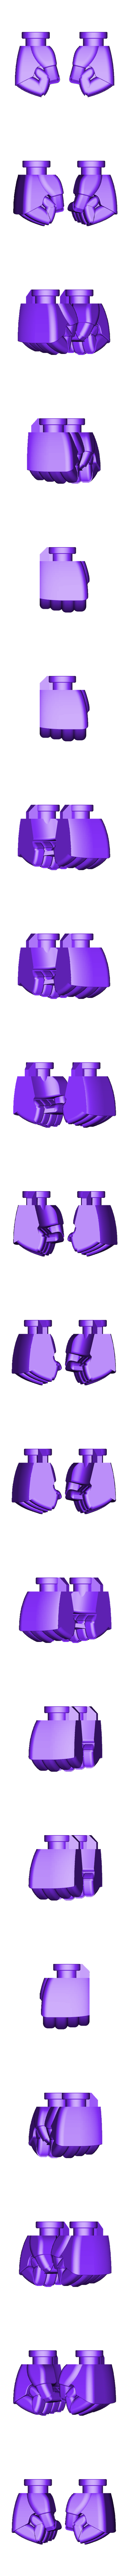 Upgradehand_Medium_Fist.stl Télécharger fichier STL gratuit Mise à niveau des mains des robots G1 (proportion fixe) • Objet à imprimer en 3D, Toymakr3D